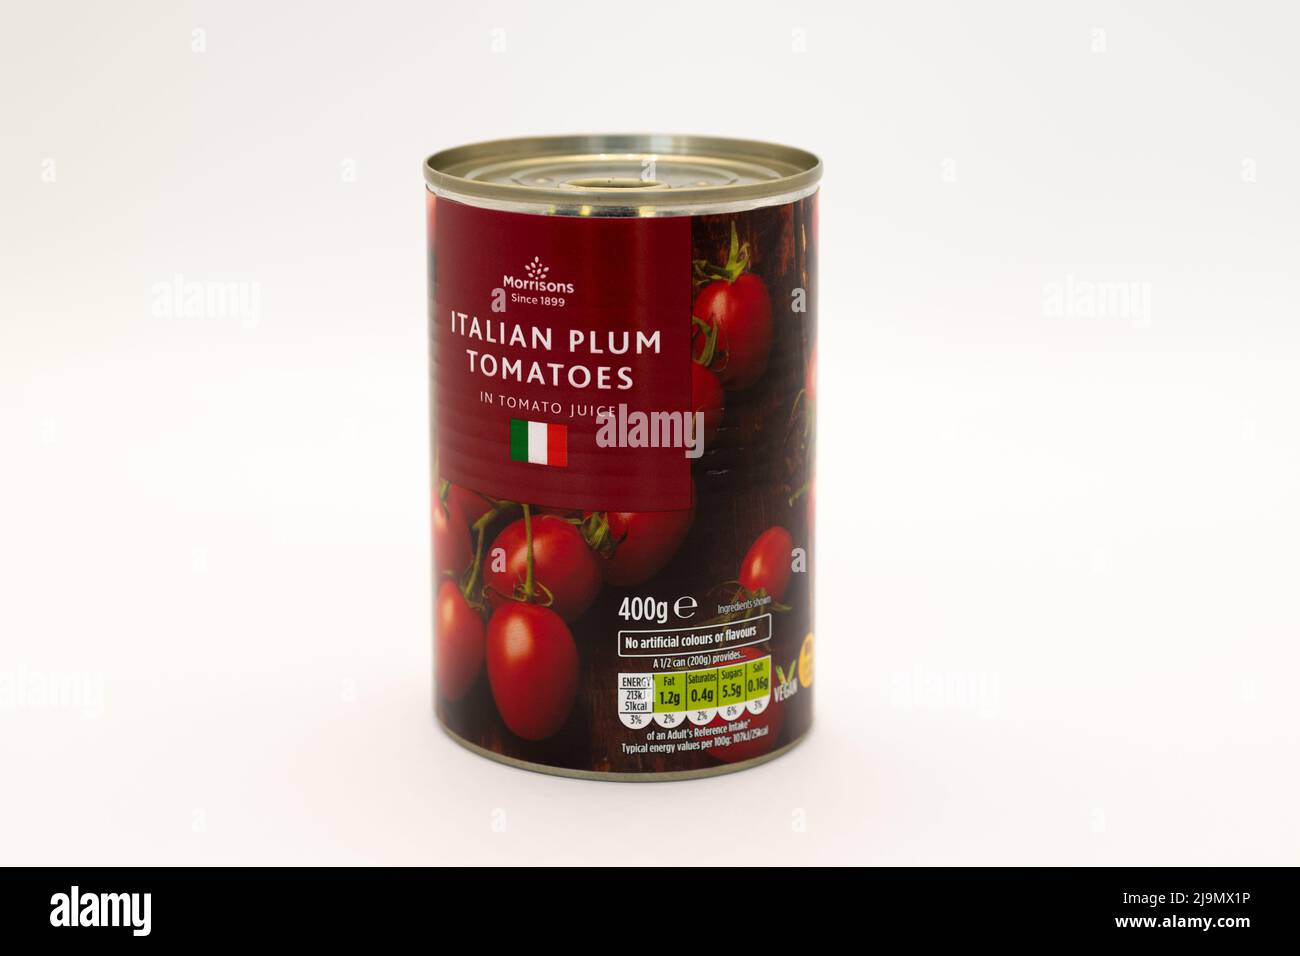 Irvine, Escocia, Reino Unido - 18 de mayo de 2022: Tomates de ciruela italianos de la marca Morrisons en una etiqueta reciclable de estaño y papel. Foto de stock